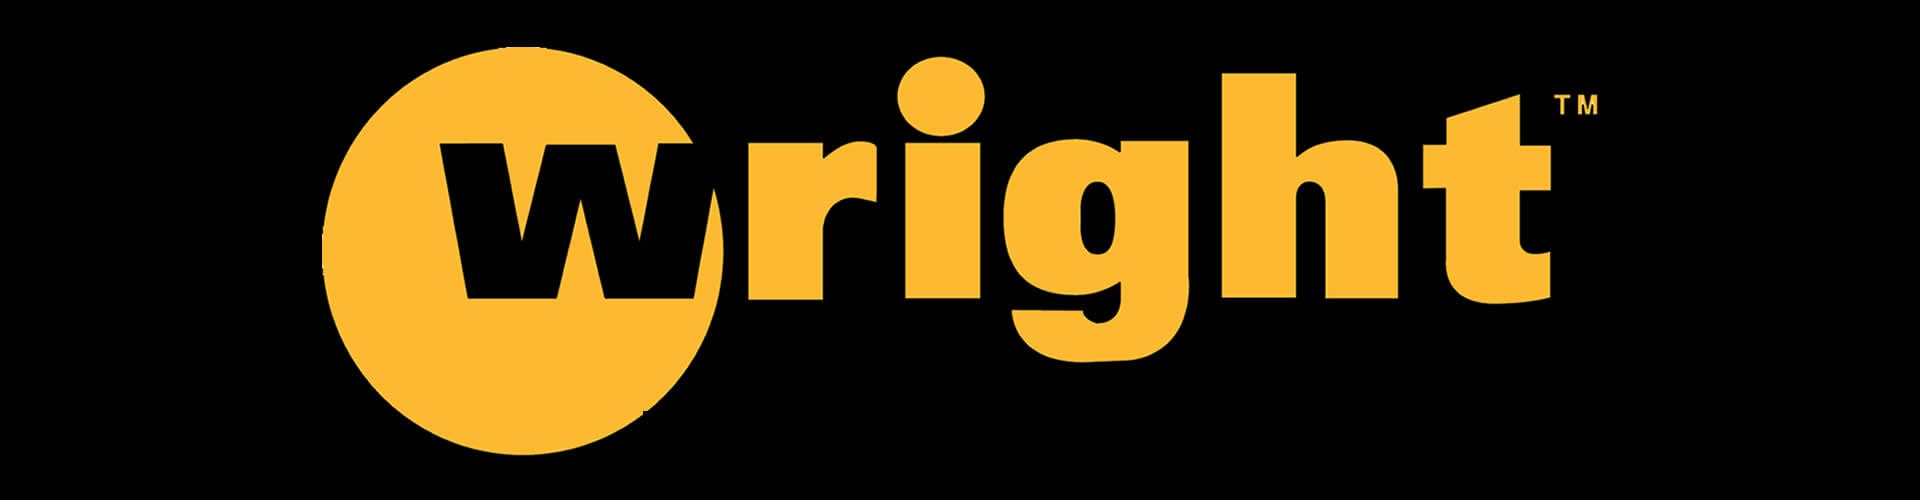 Wright Logo - Big League Lawns, LLC| Wright